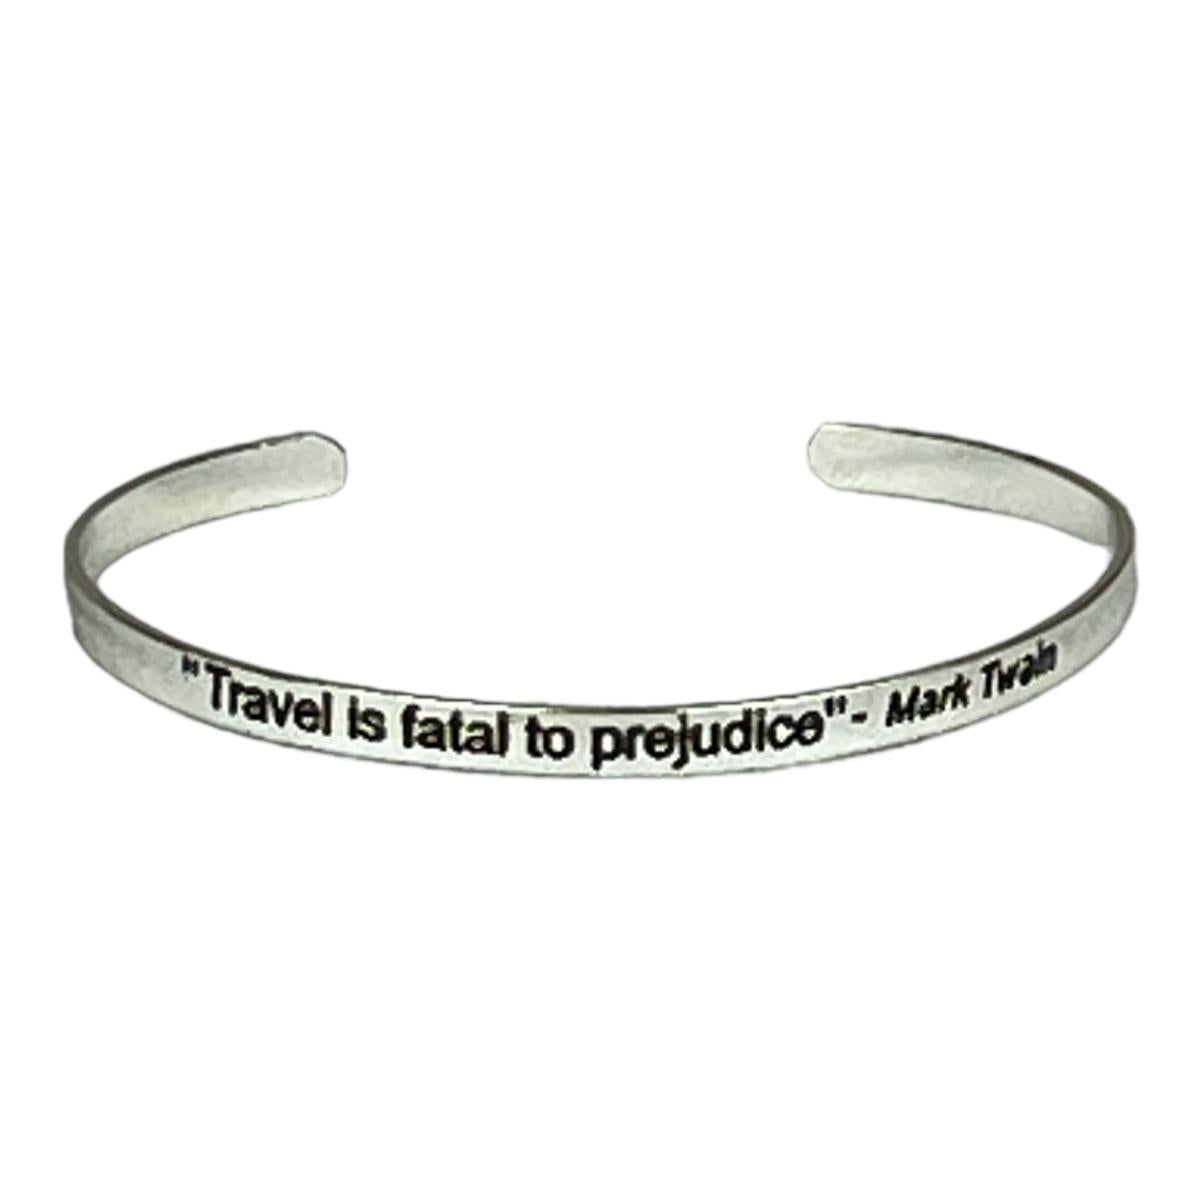 Travel is Fatal to Prejudice bracelet